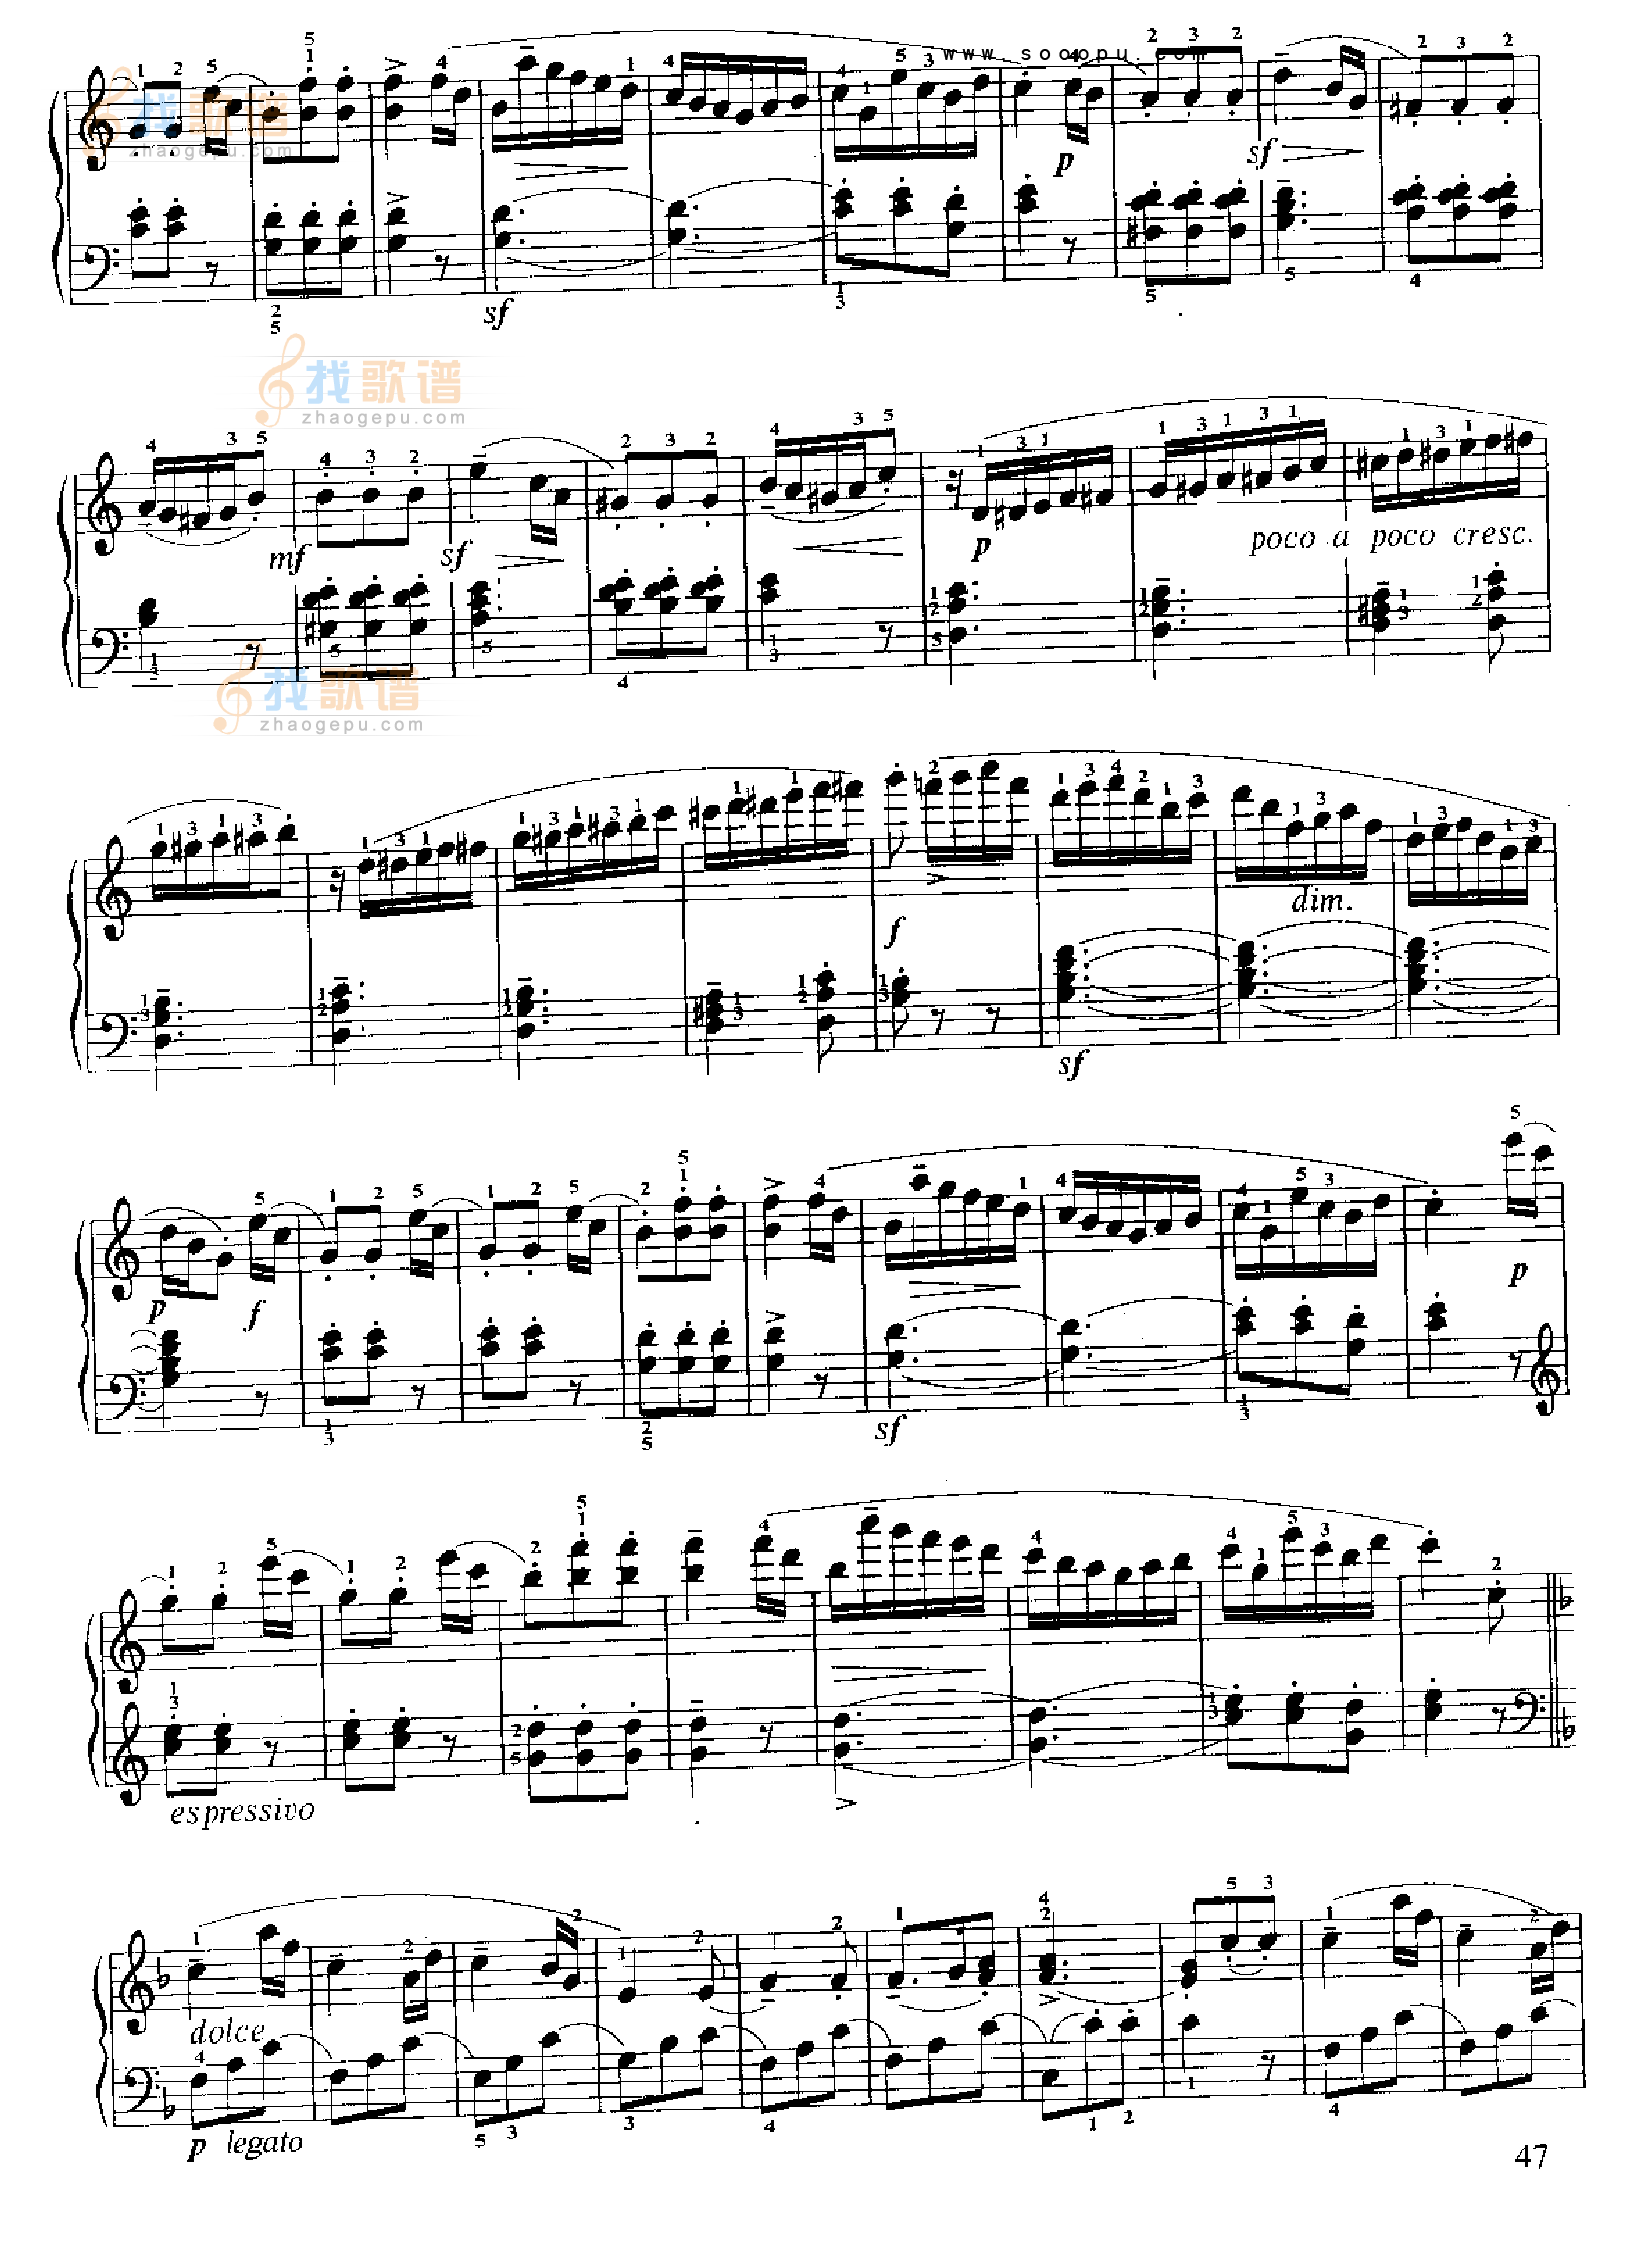 查字典简谱网 钢琴谱 流行类 > 小奏鸣曲(op.55 no.1)图片